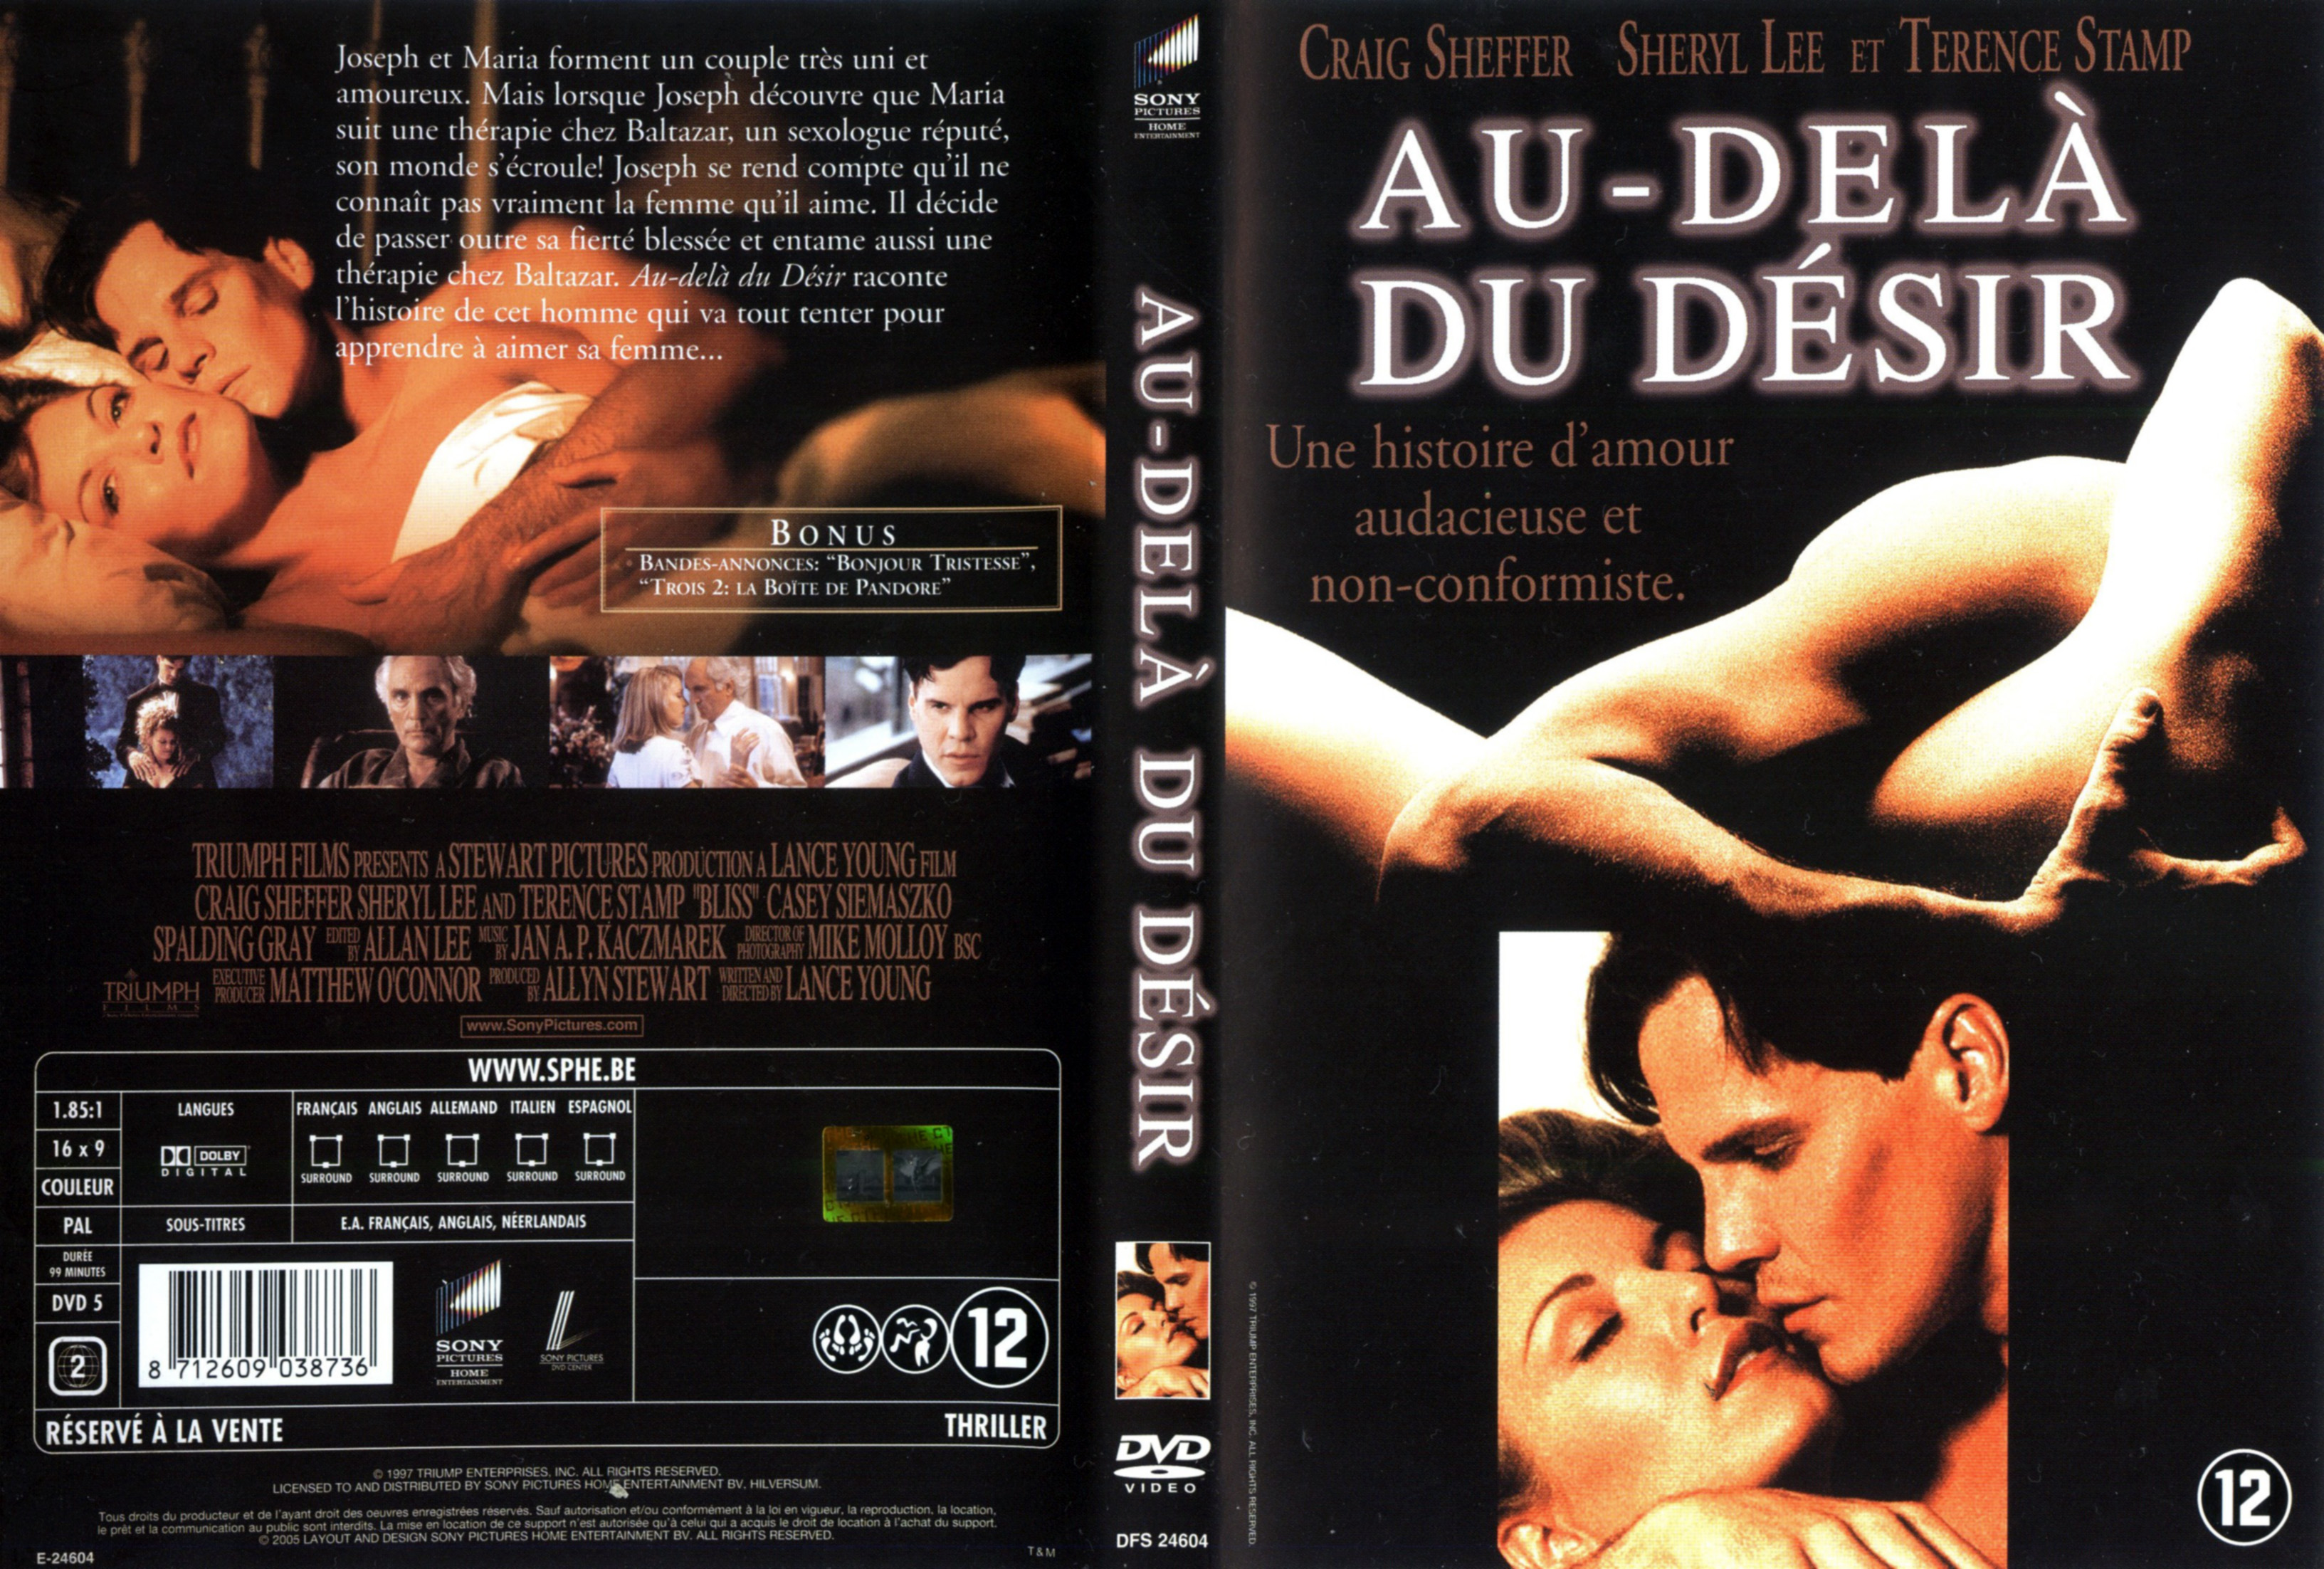 Jaquette DVD Au-del du dsir